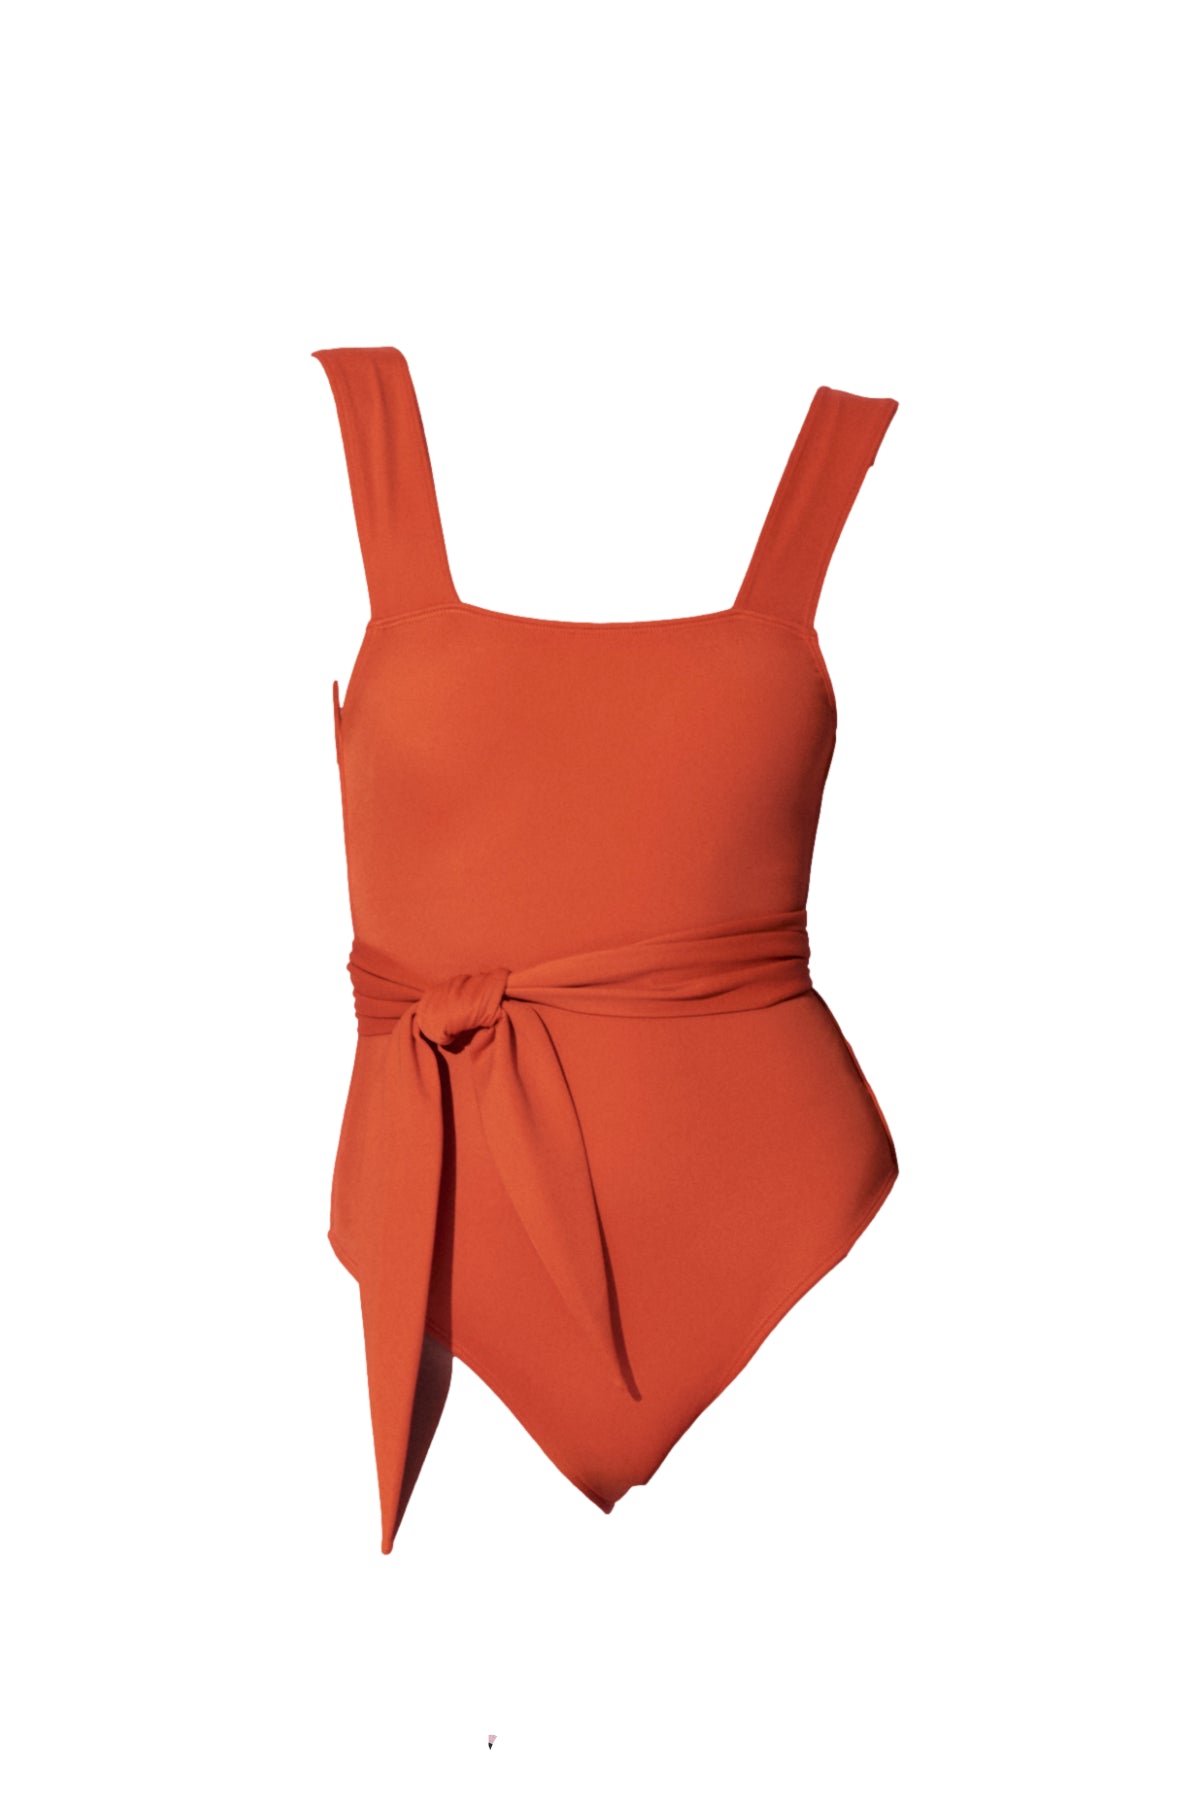 Chikyu belted one piece swimming suit in orange from luxury sustainable swimwear brand Koraru